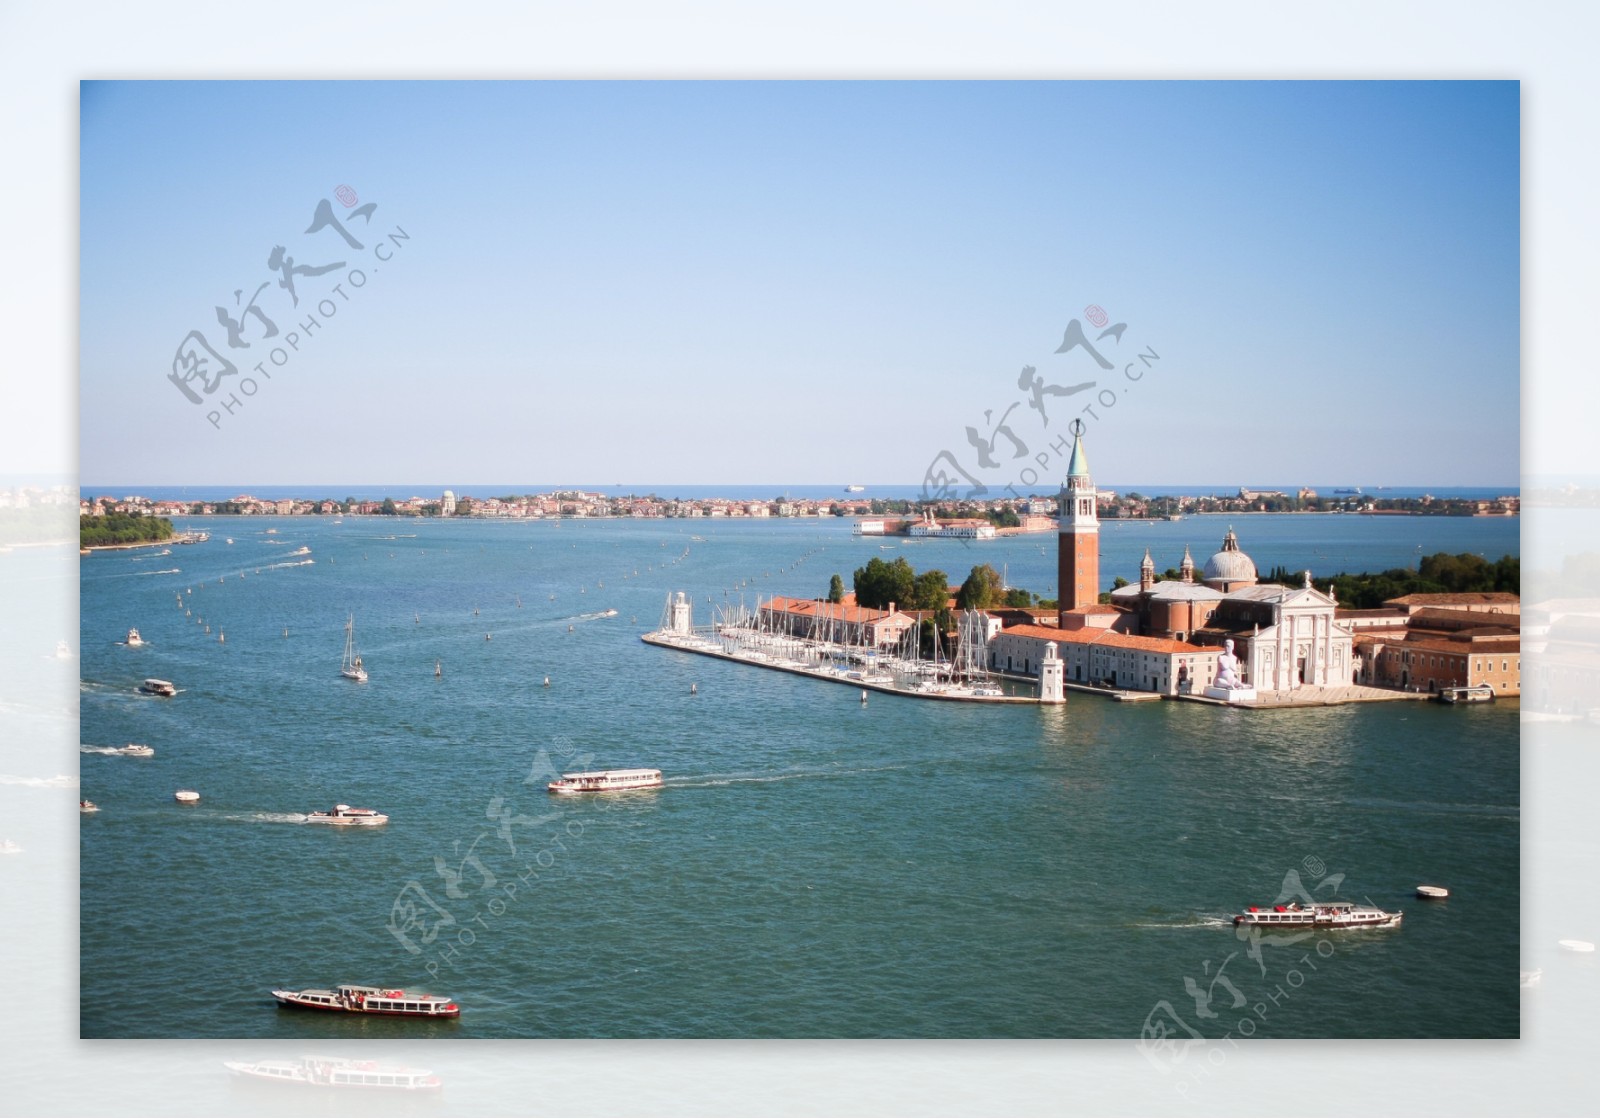 美丽的威尼斯水城图片